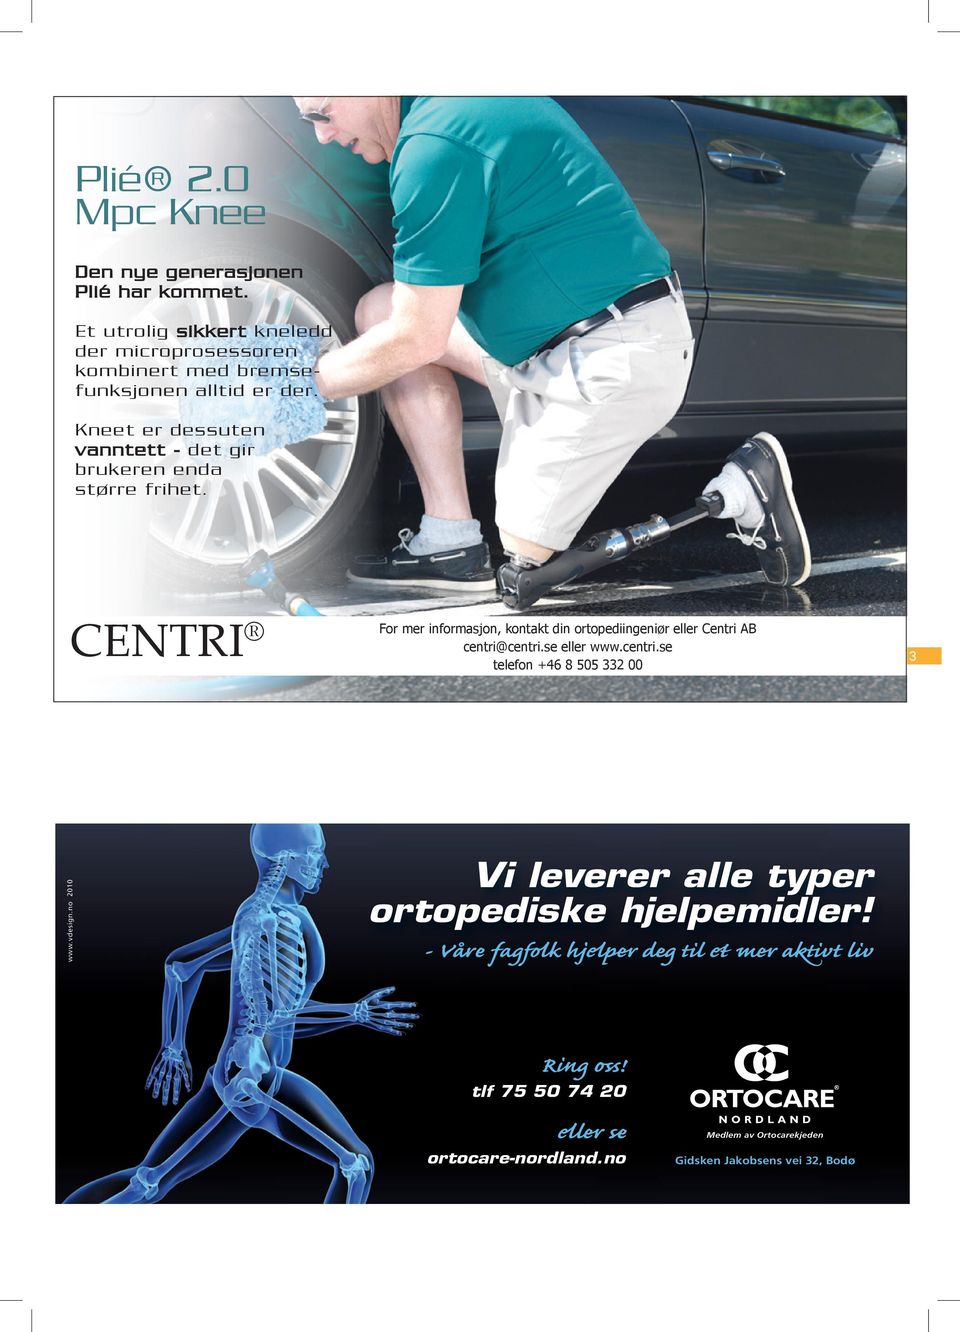 no 2010 CENTRI For mer informasjon, kontakt din ortopediingeniør eller Centri AB centri@